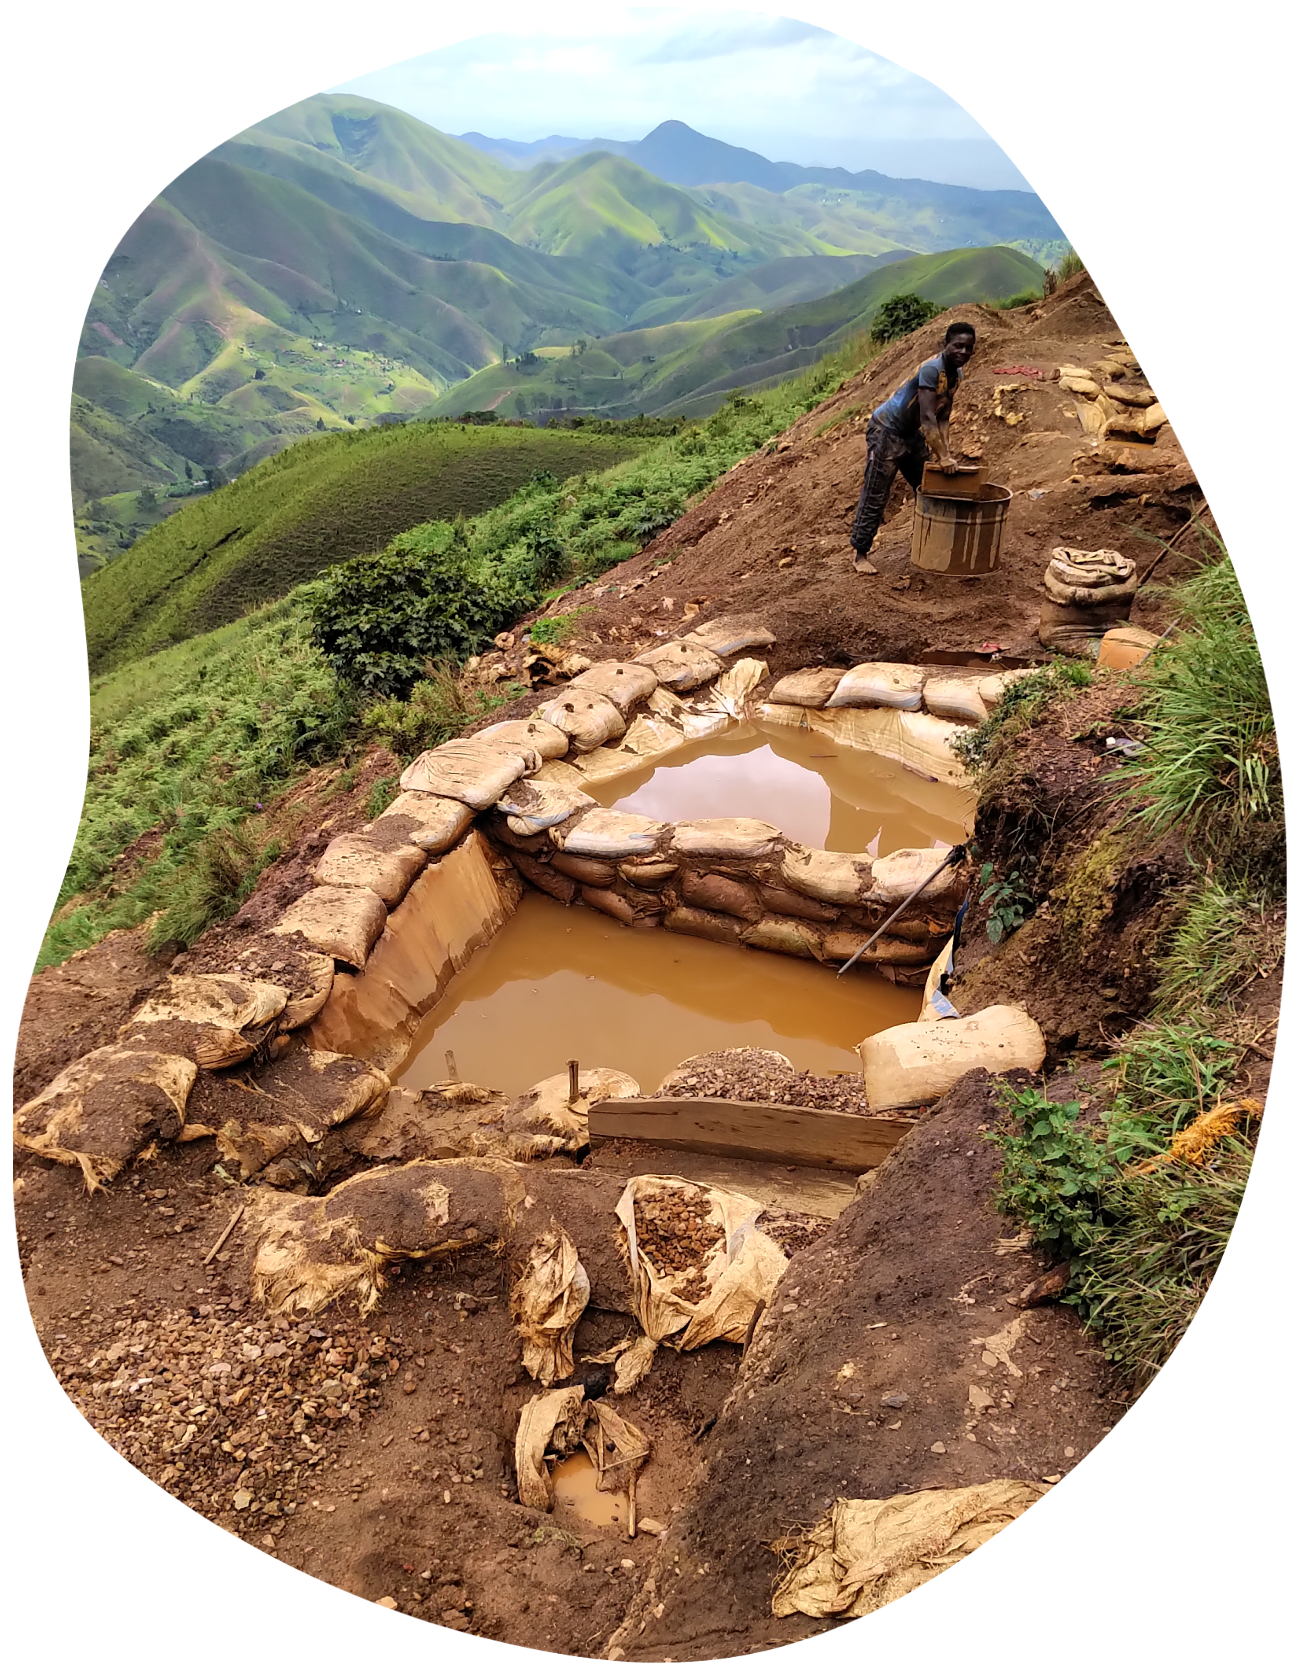 Artisanal miner in DRC